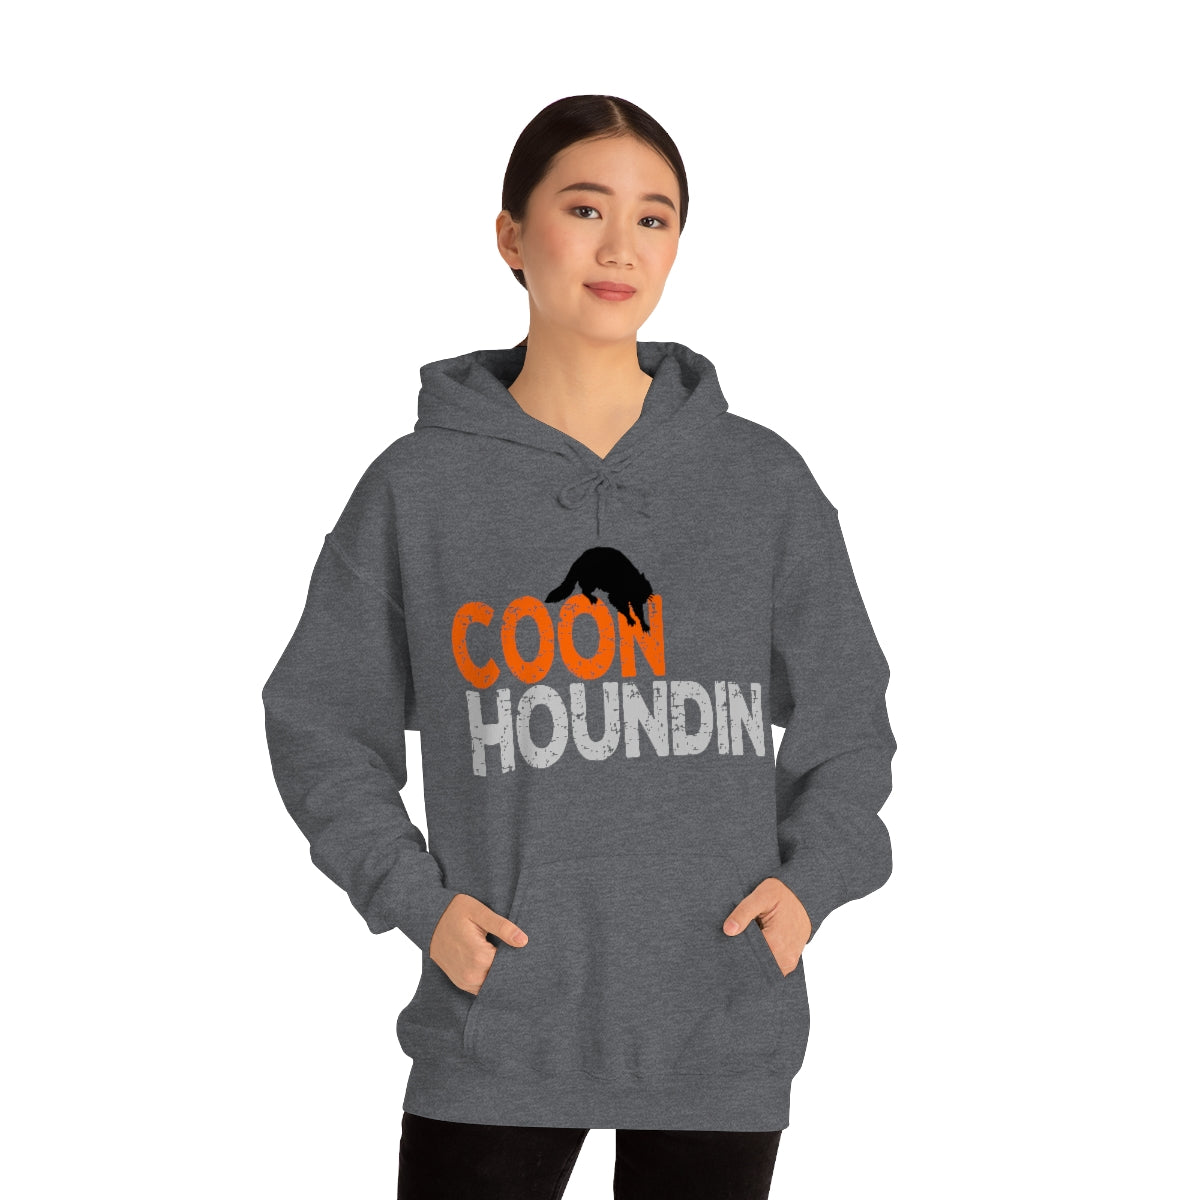 Coon Houndin Unisex  Hooded Sweatshirt